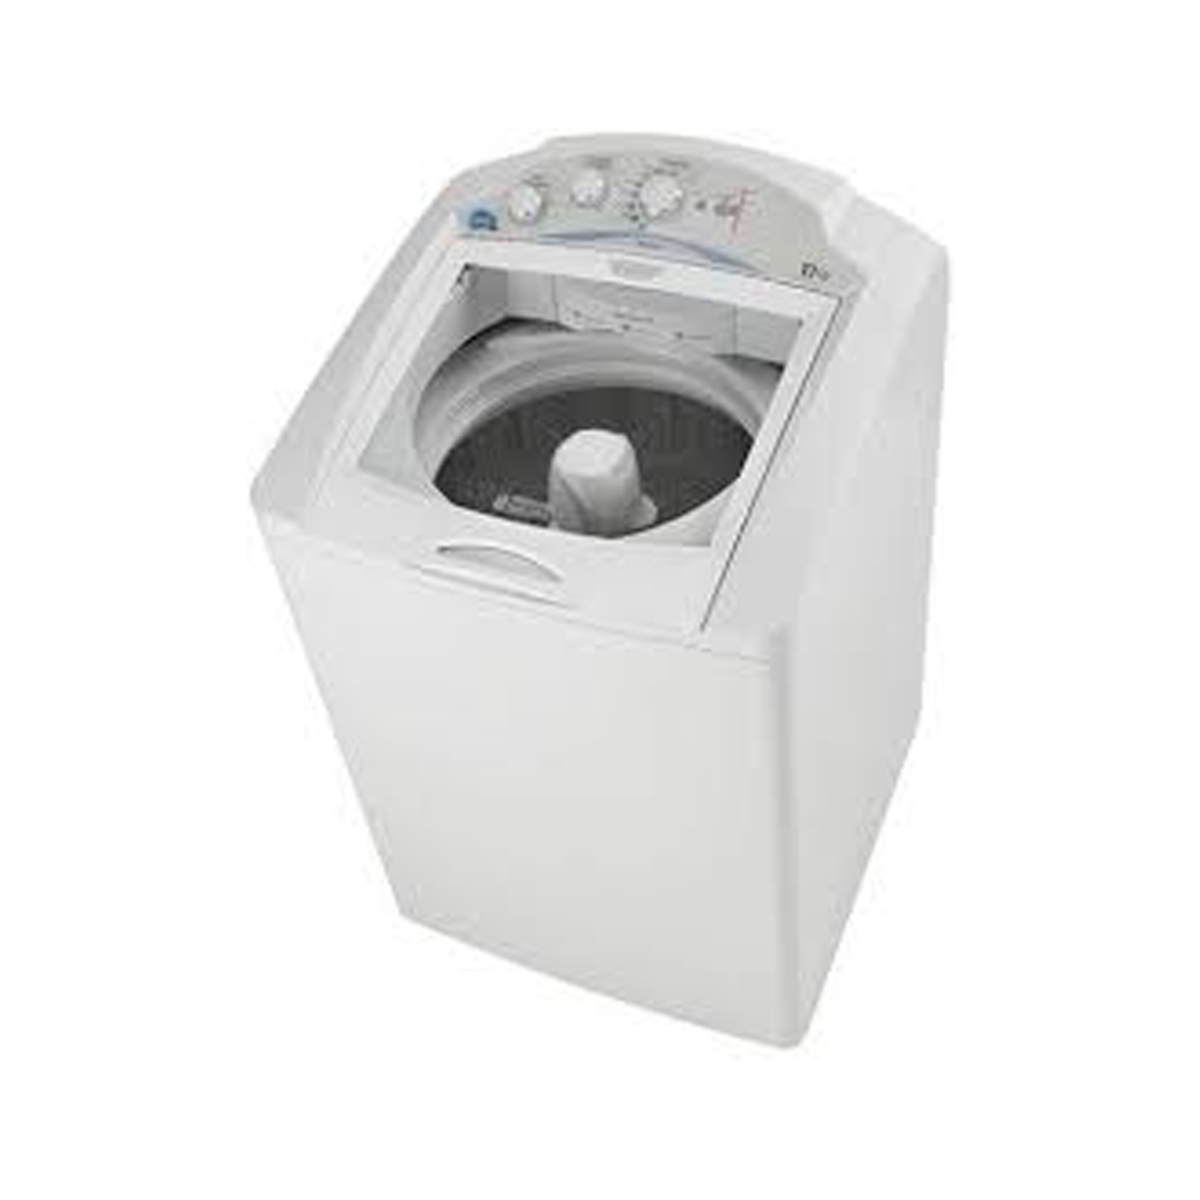 Lavadora automática 17 kg Blanca easy - LAE17300PBB00, Lavadoras Servicio, Lavado y Secado Servicio